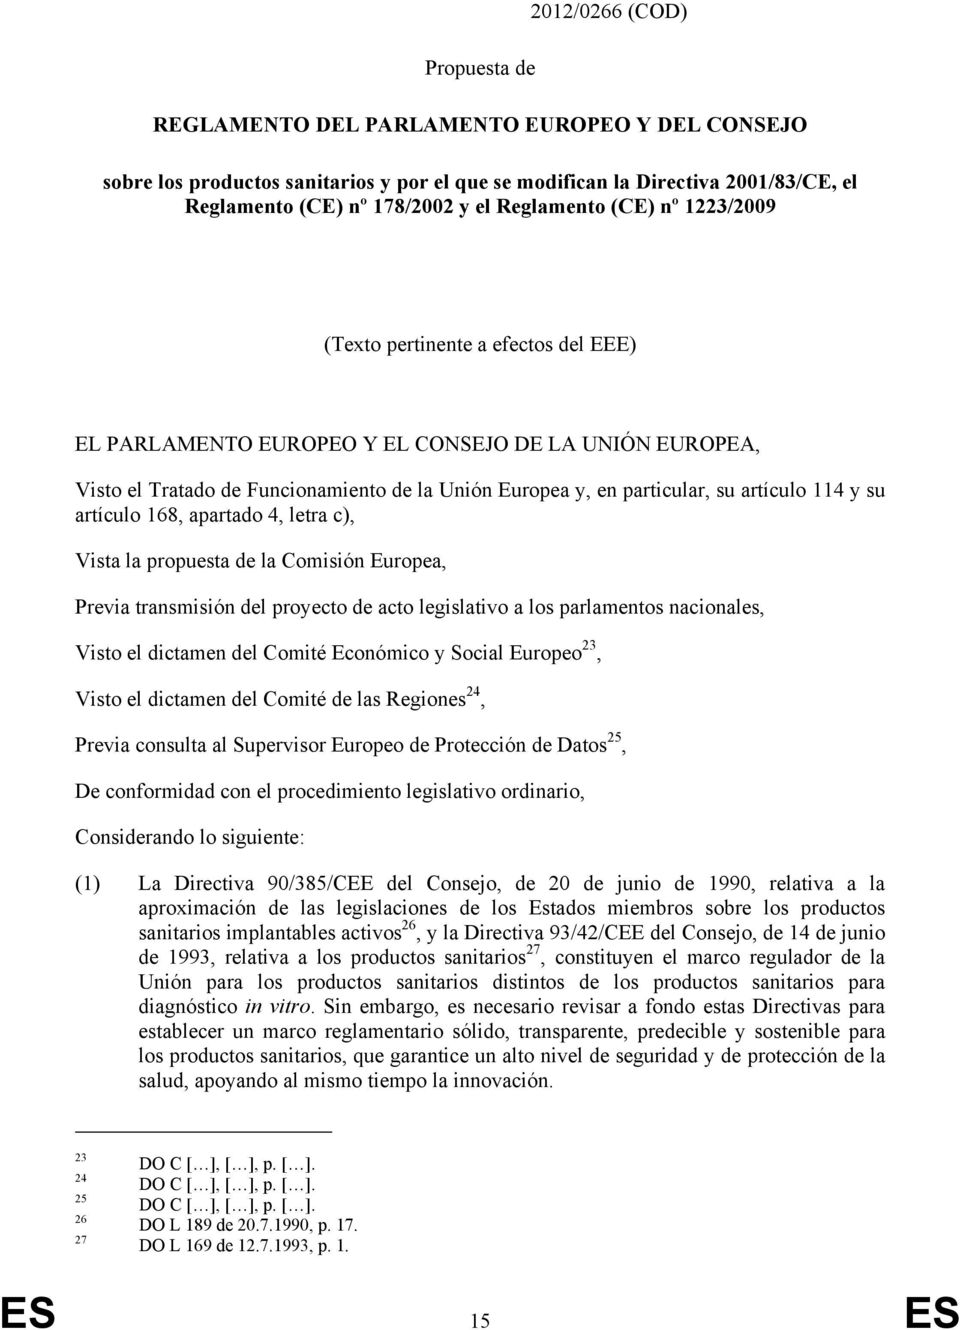 artículo 114 y su artículo 168, apartado 4, letra c), Vista la propuesta de la Comisión Europea, Previa transmisión del proyecto de acto legislativo a los parlamentos nacionales, Visto el dictamen